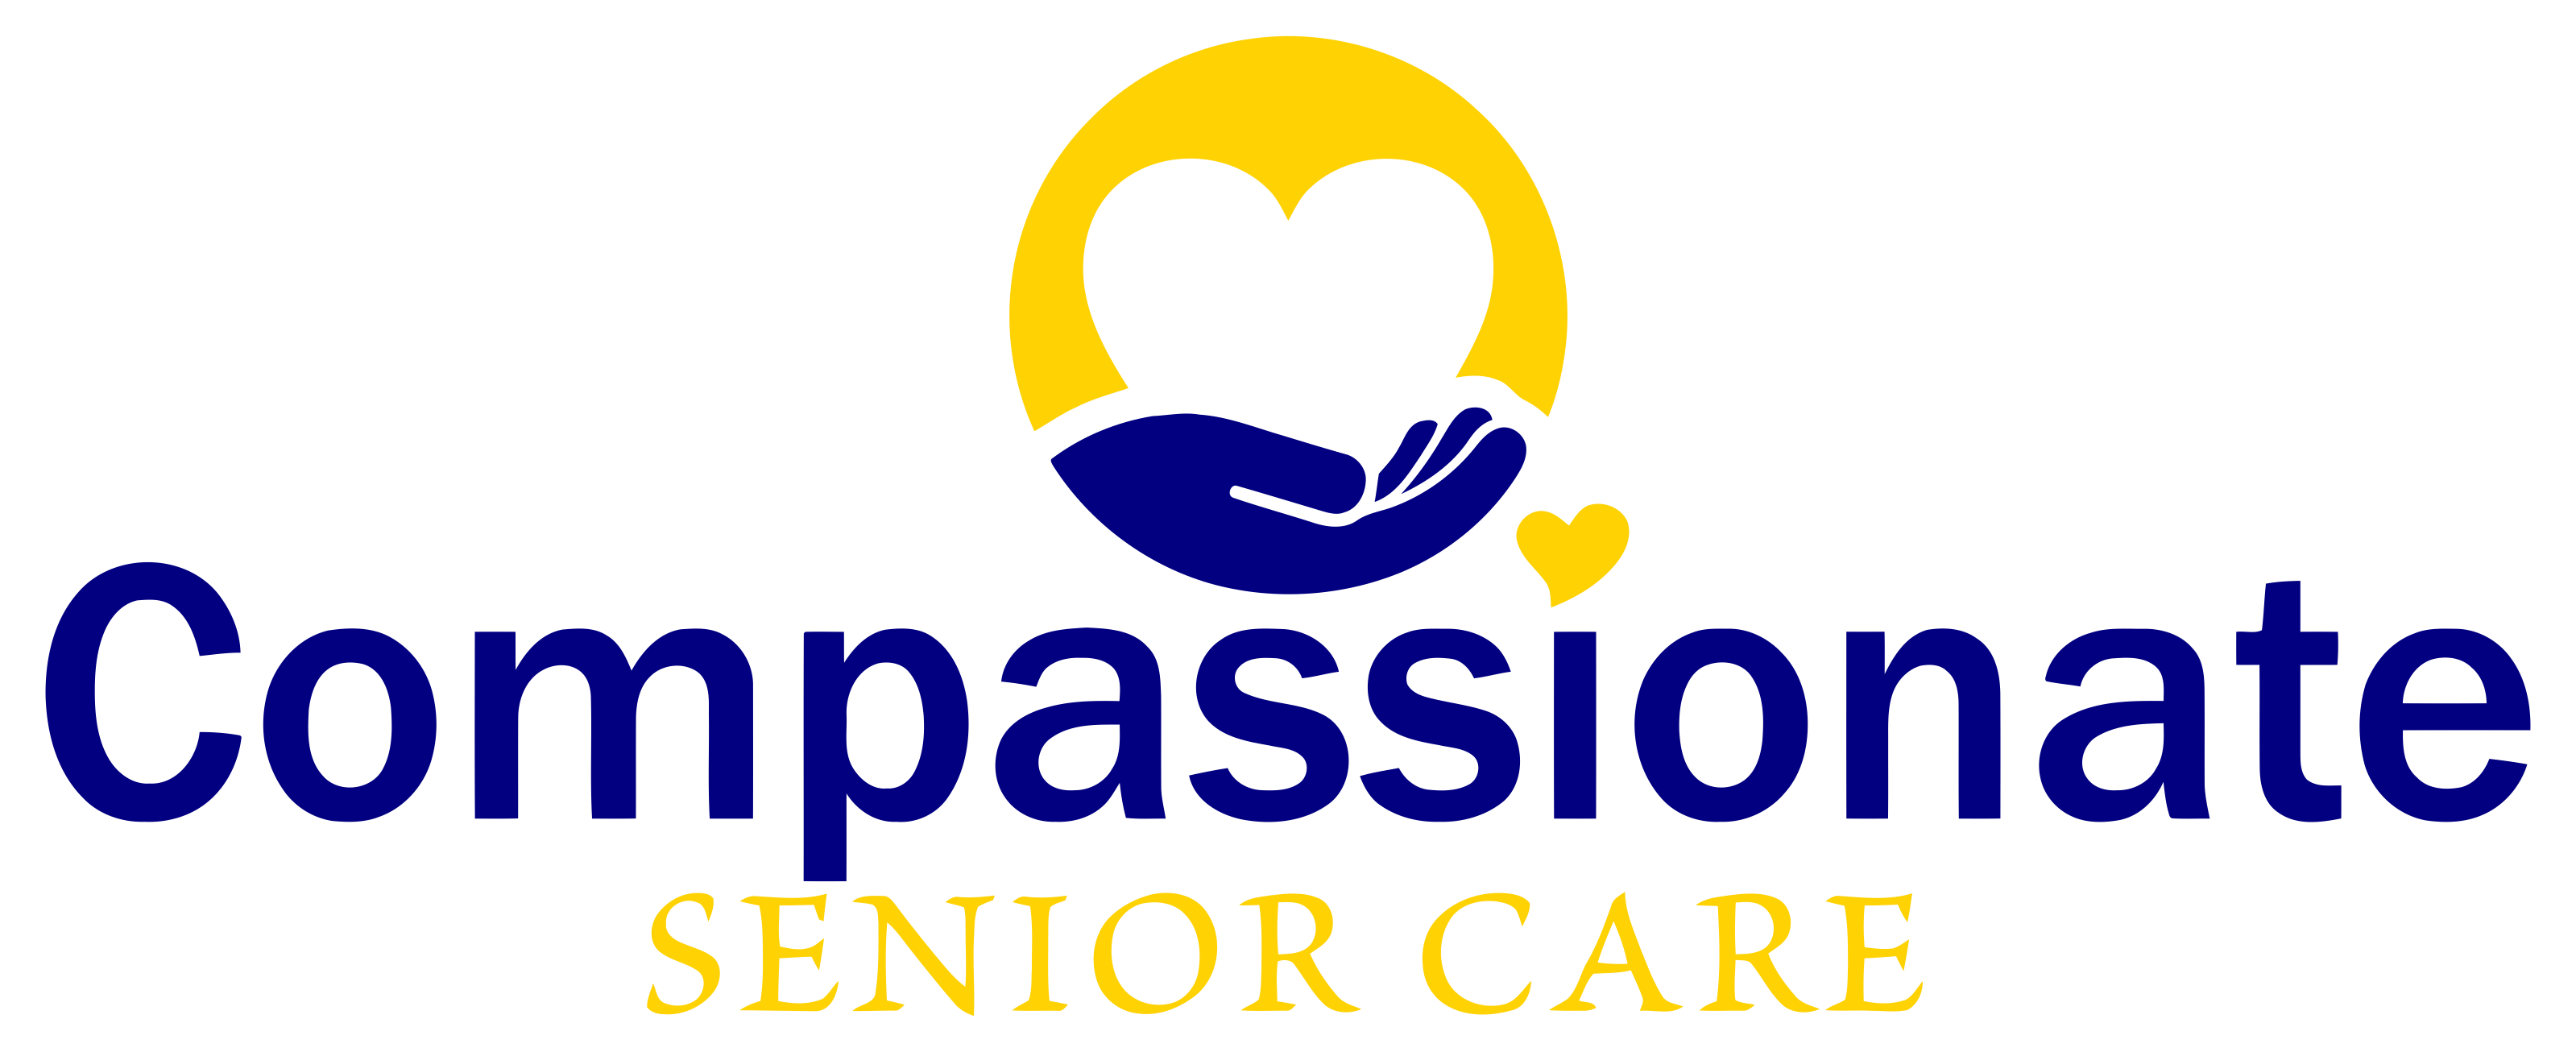 Compassionate Senior Care LLC